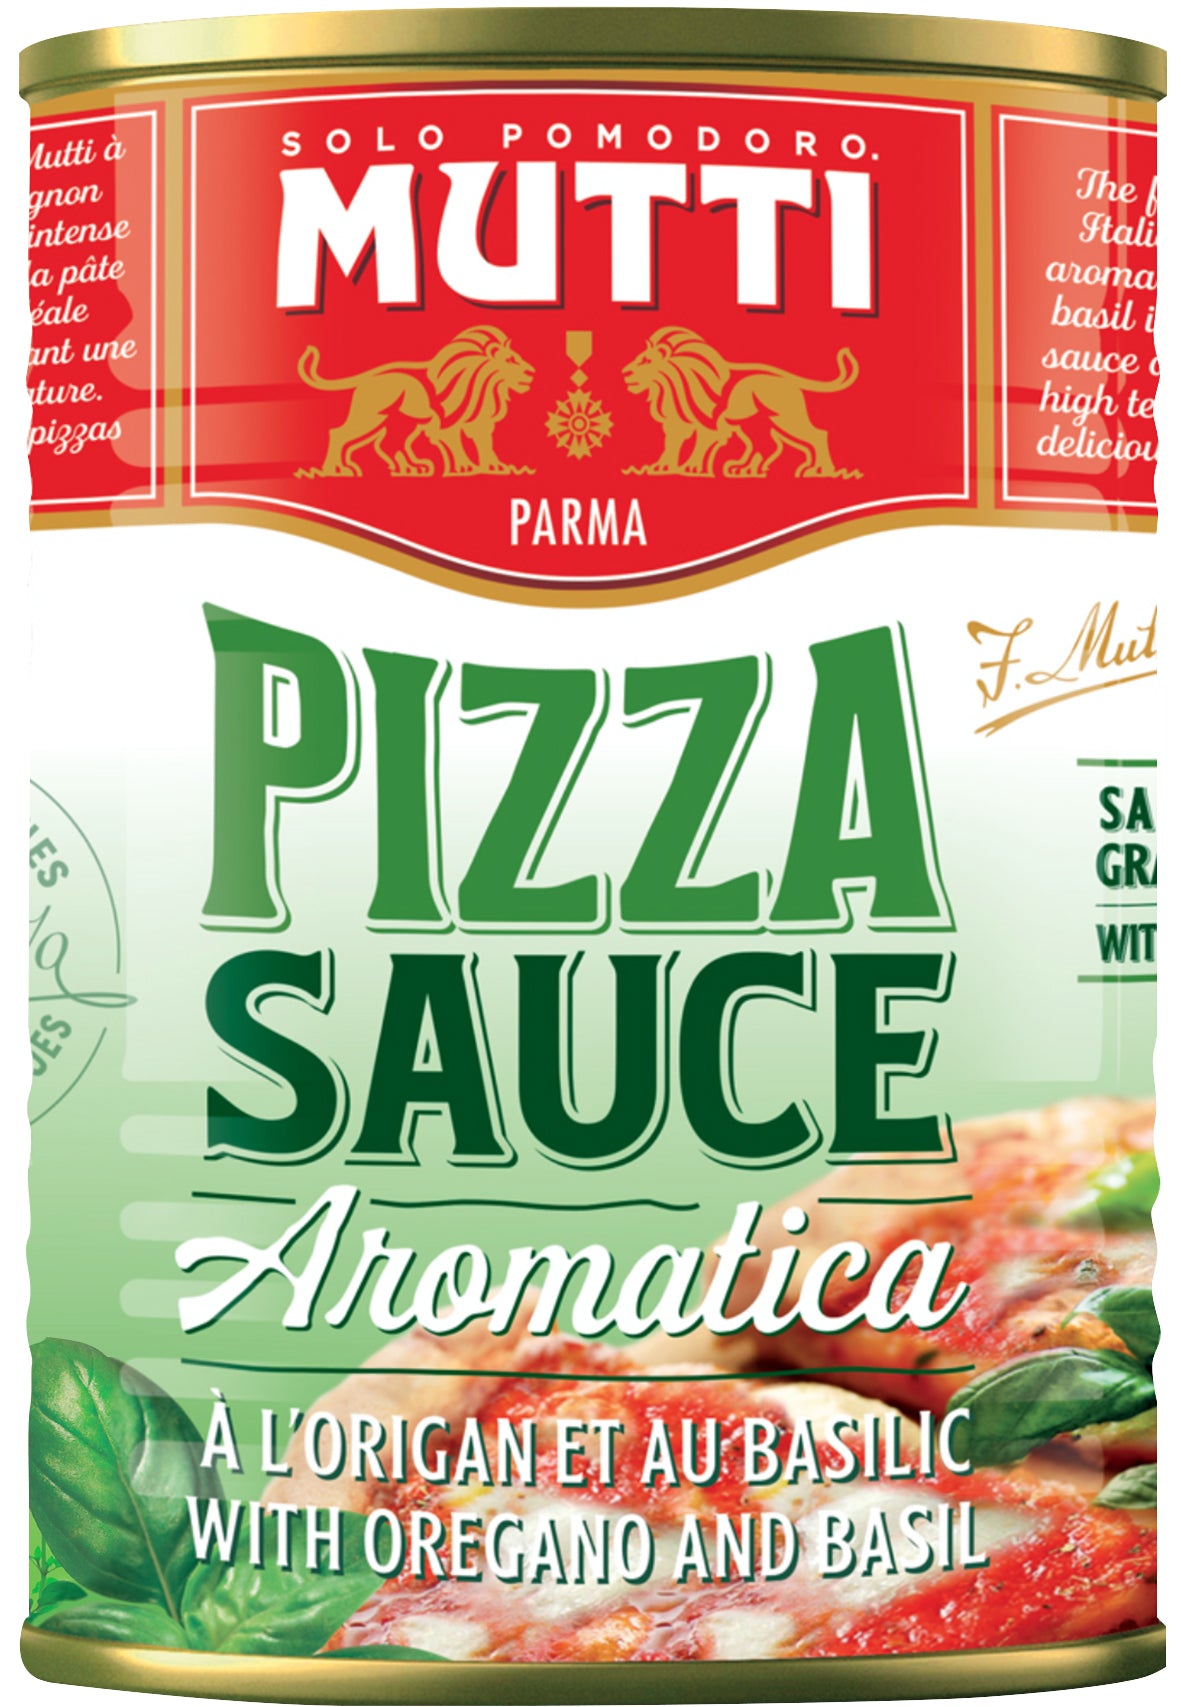 mutti томатный соус для пиццы ароматизированный 400 г купить фото 96